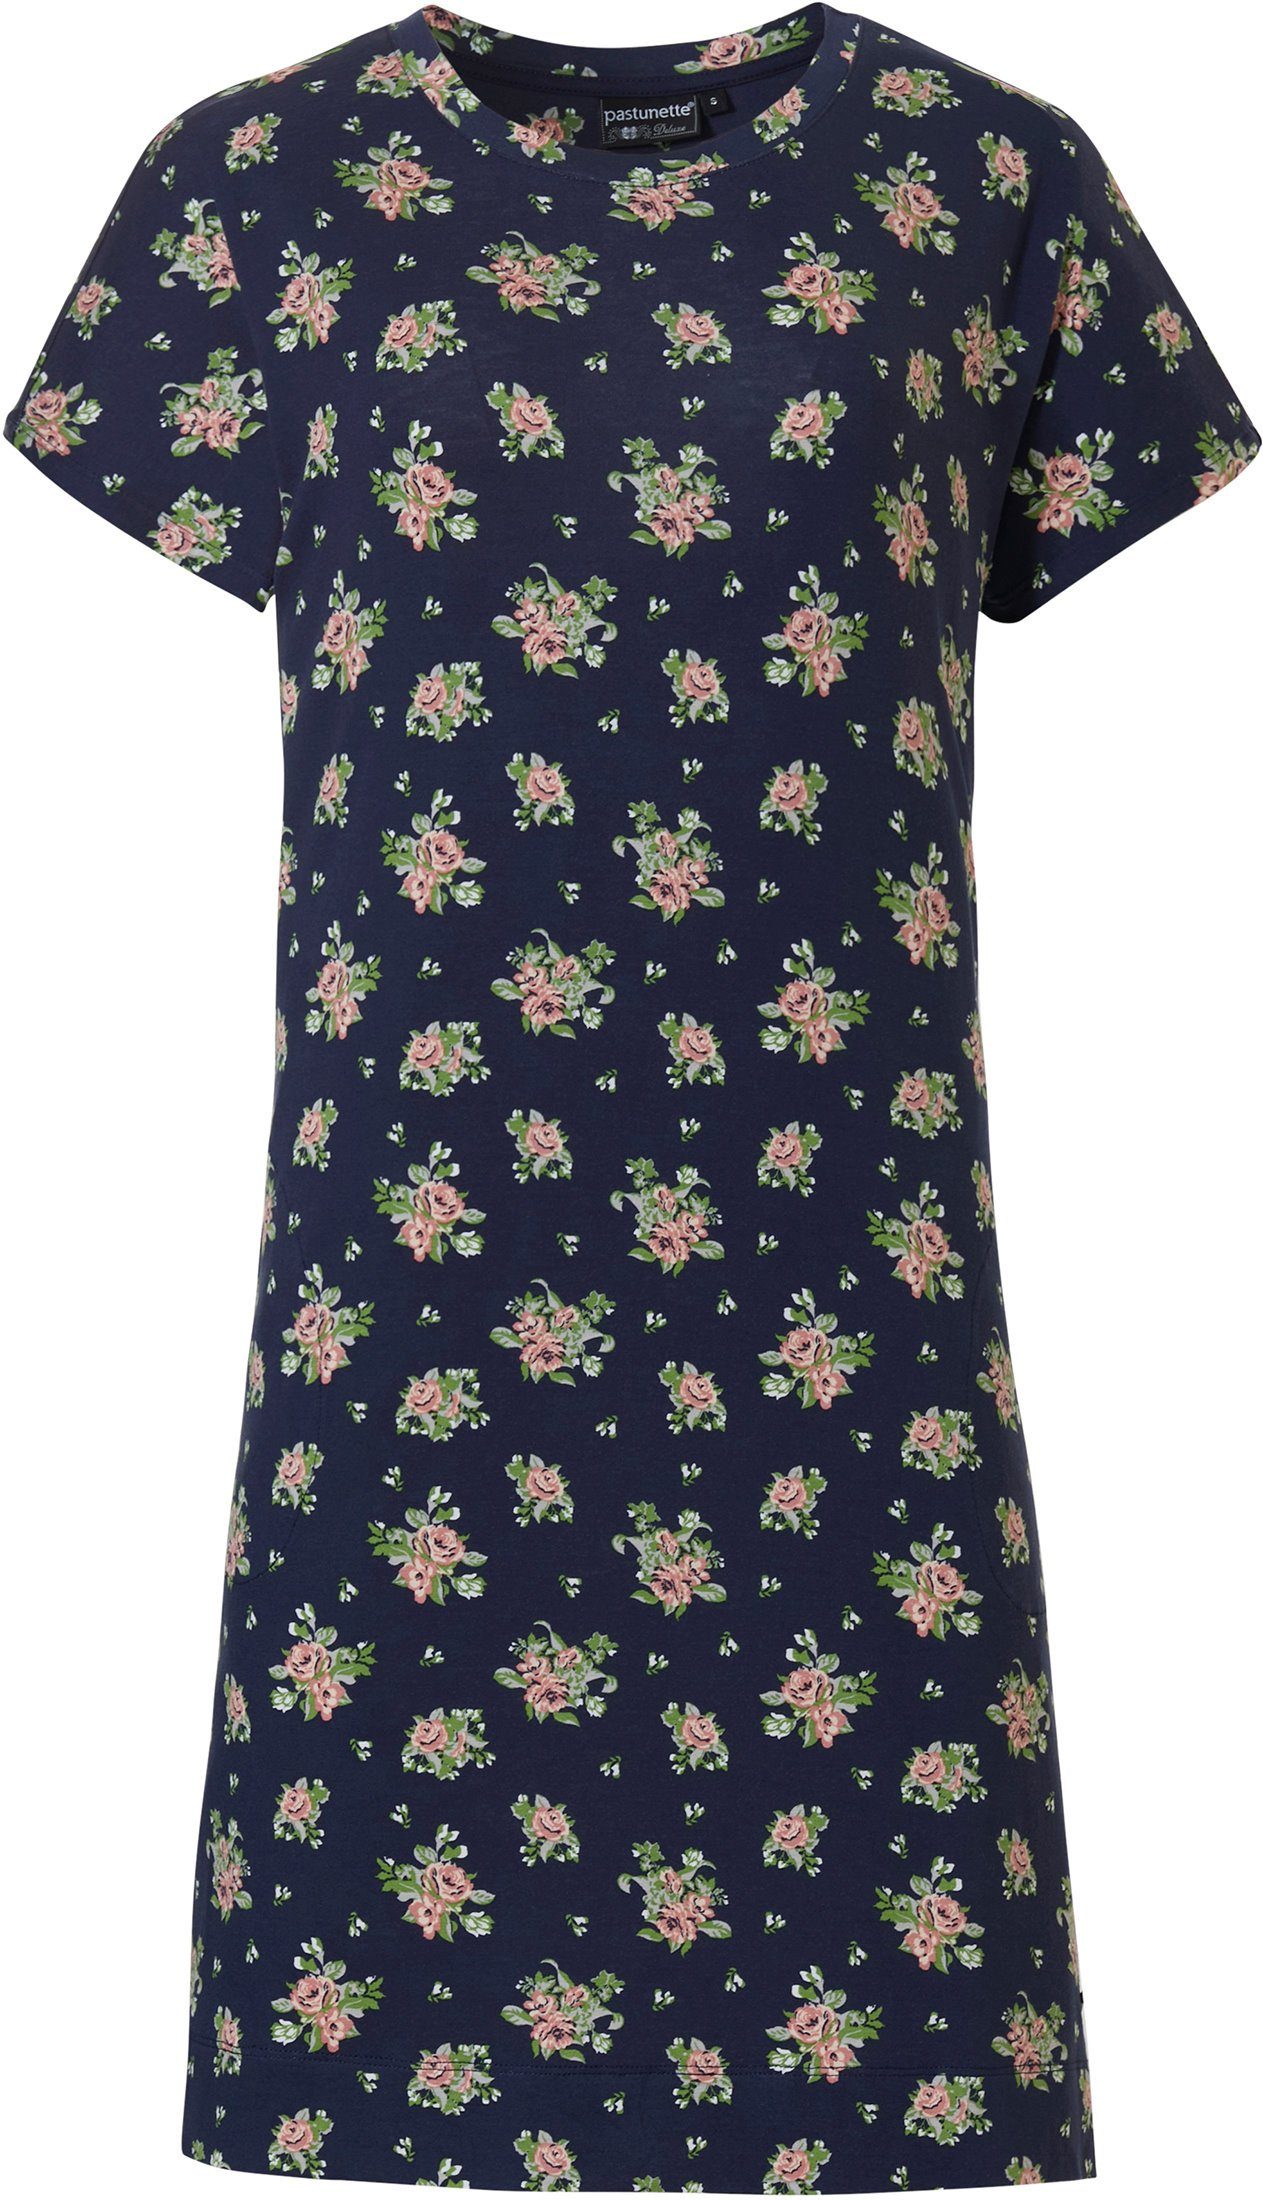 Allover Rosen mit Nachthemd (1-tlg) Nachthemd kurzem Damen Pastunette Arm